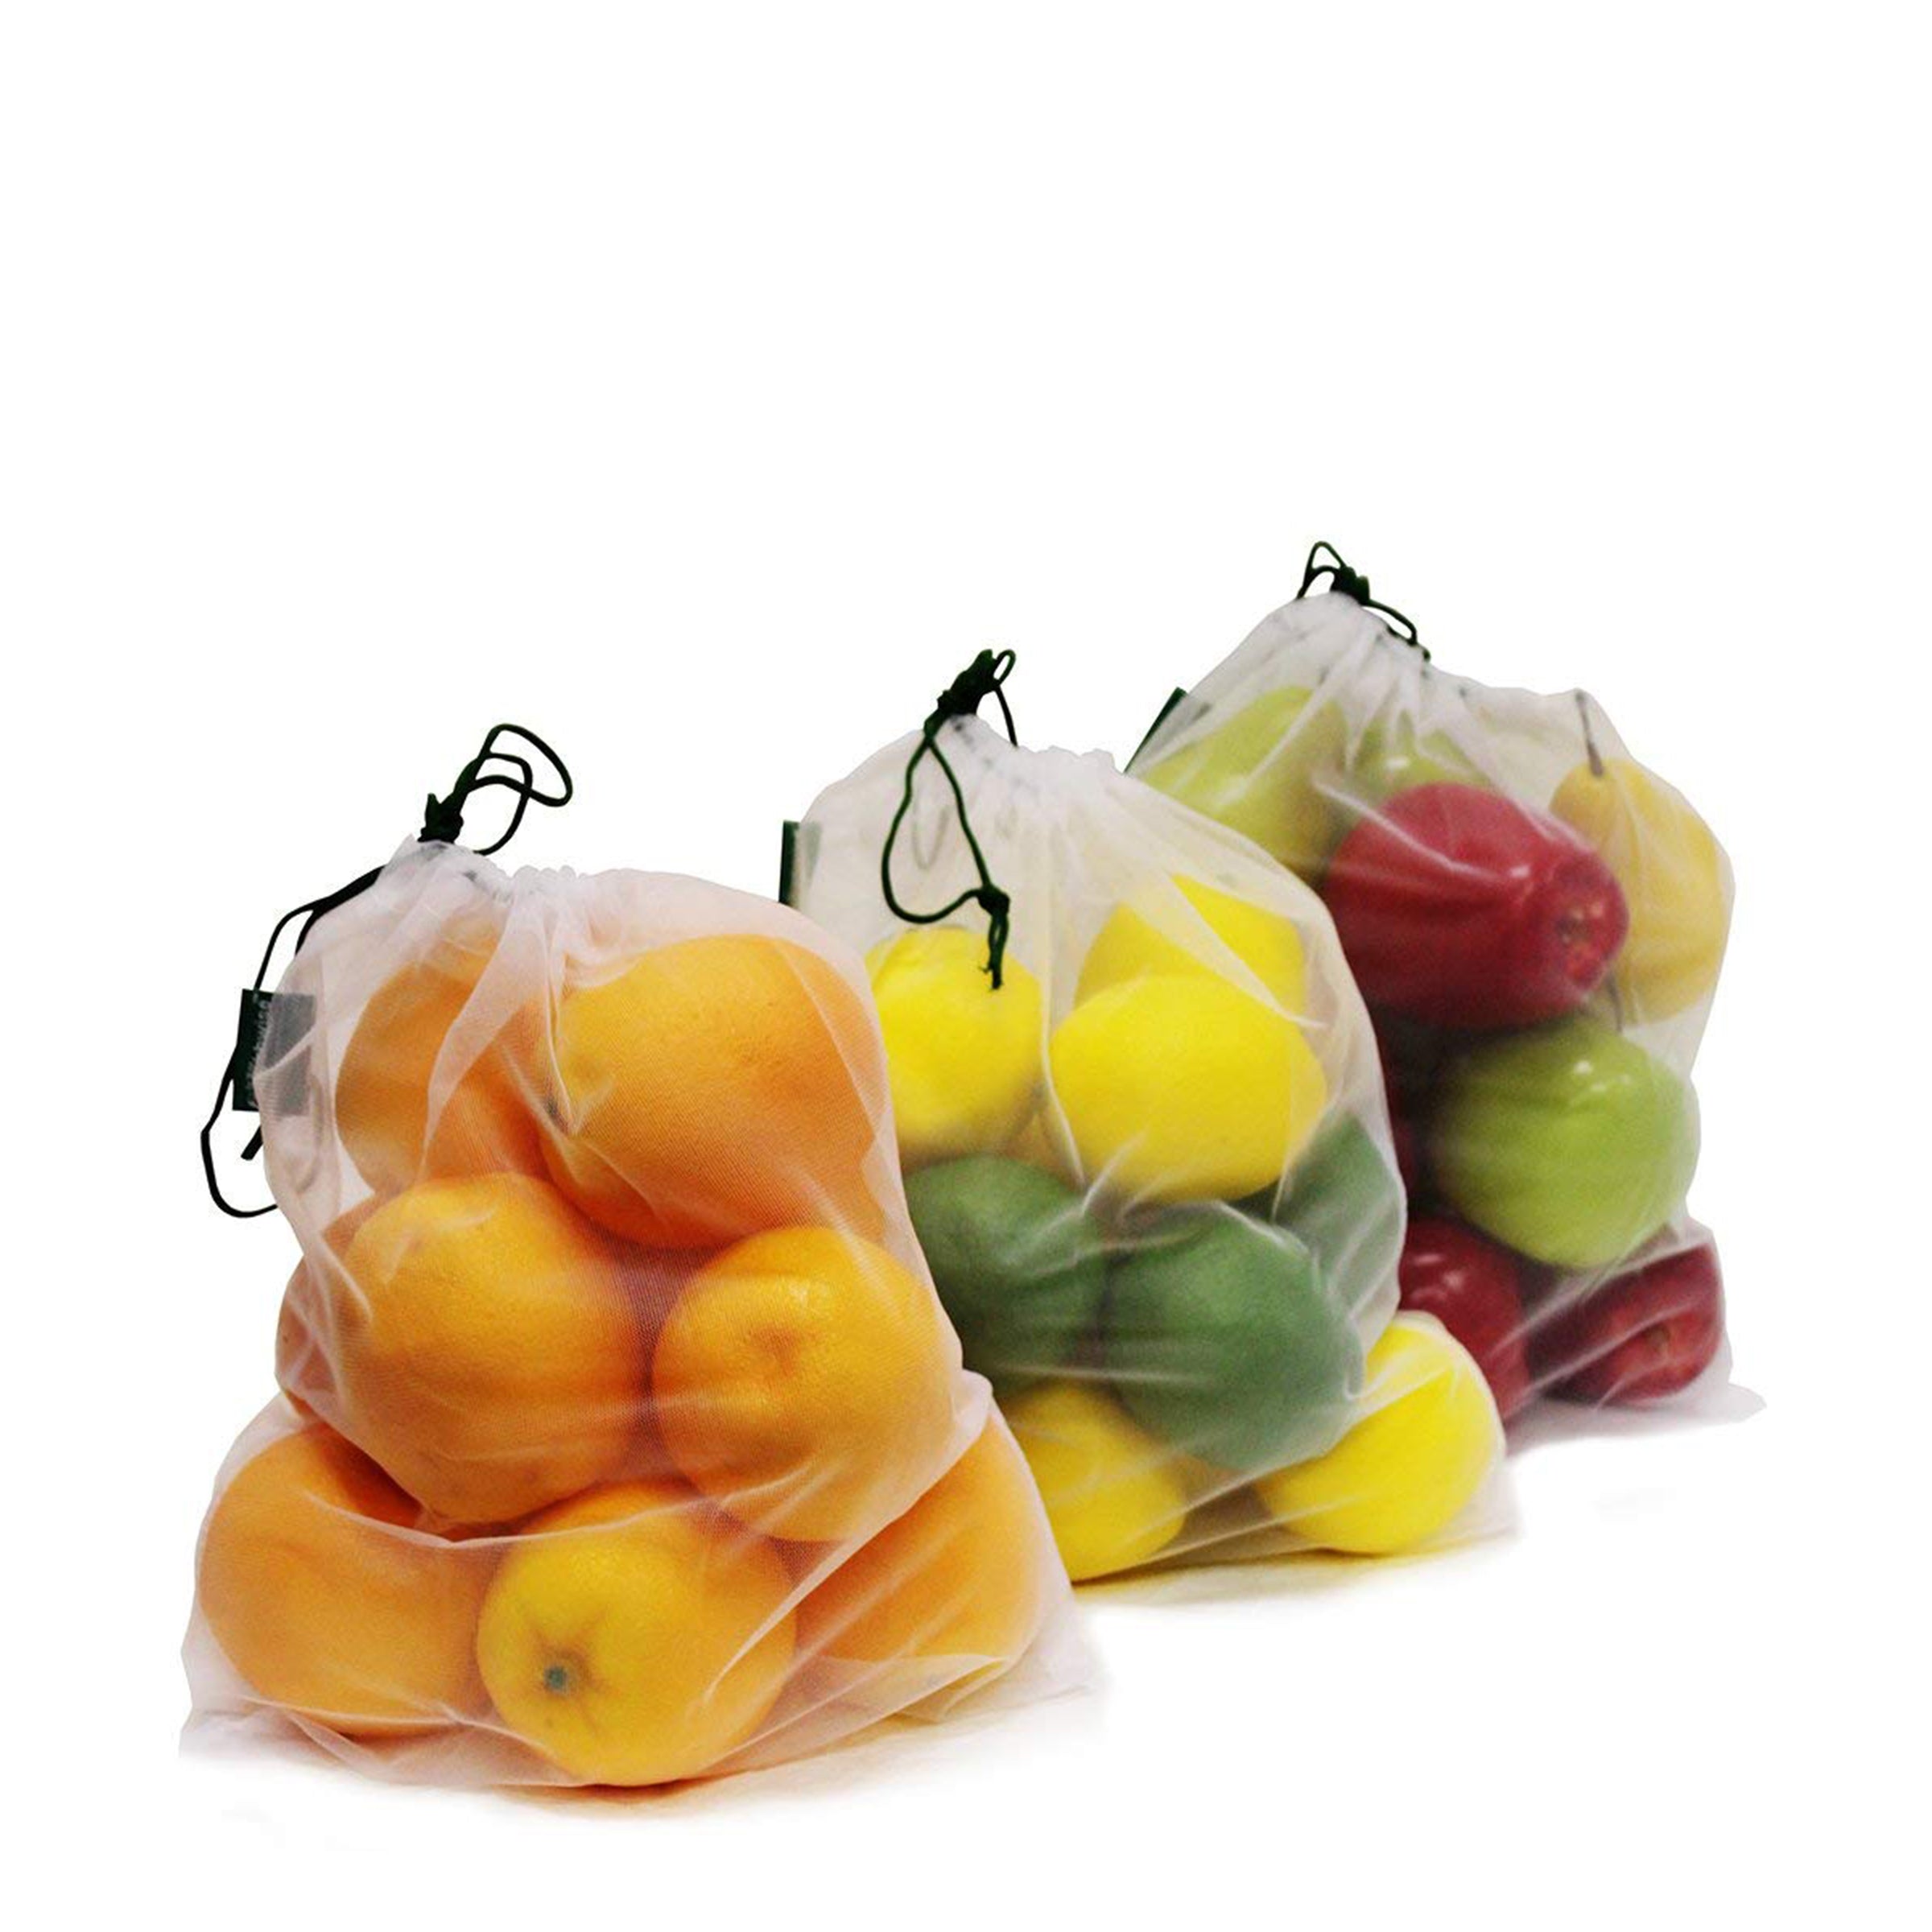 Vegetables - Ambrosia Produce Bag – Ambrosia Long-Life Linen